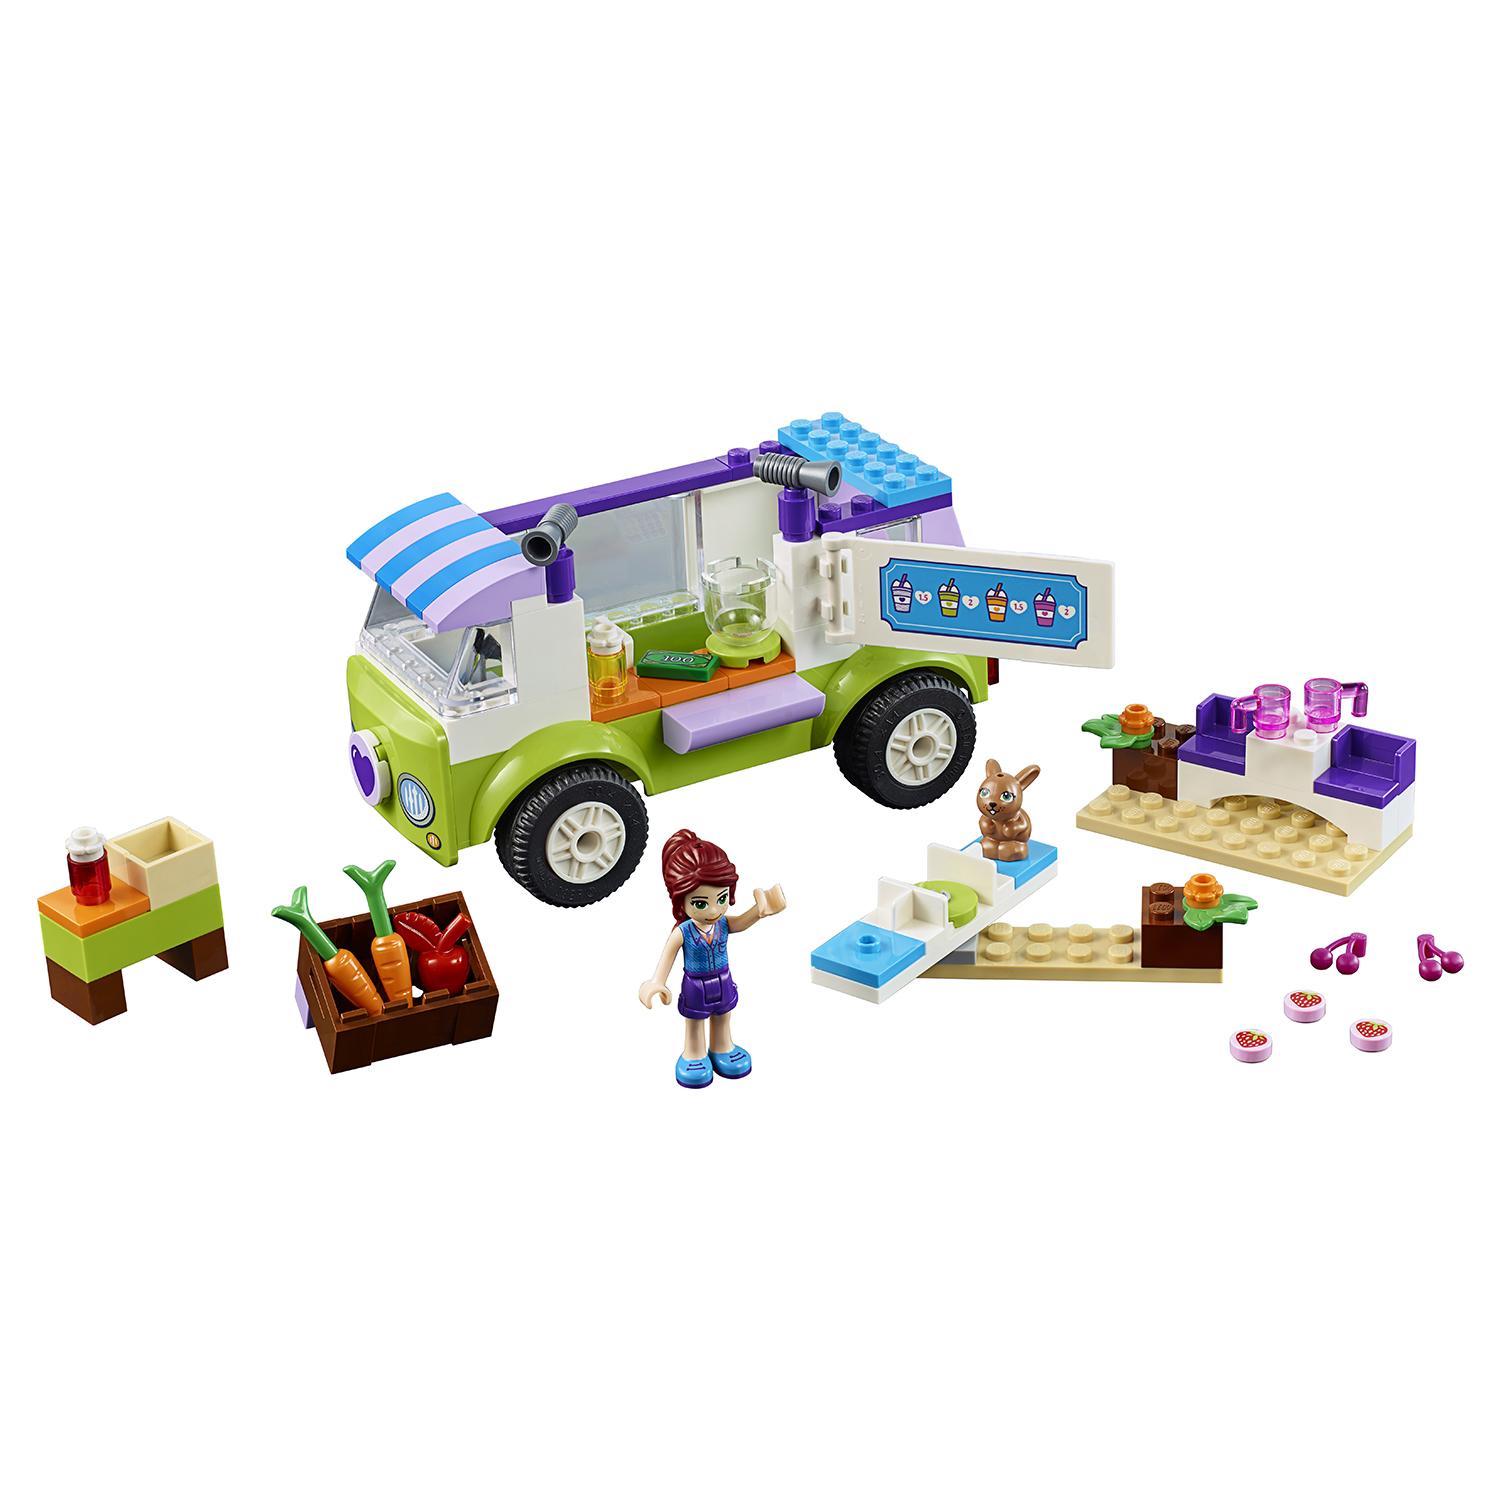 Lego Juniors 10749 Рынок органических продуктов